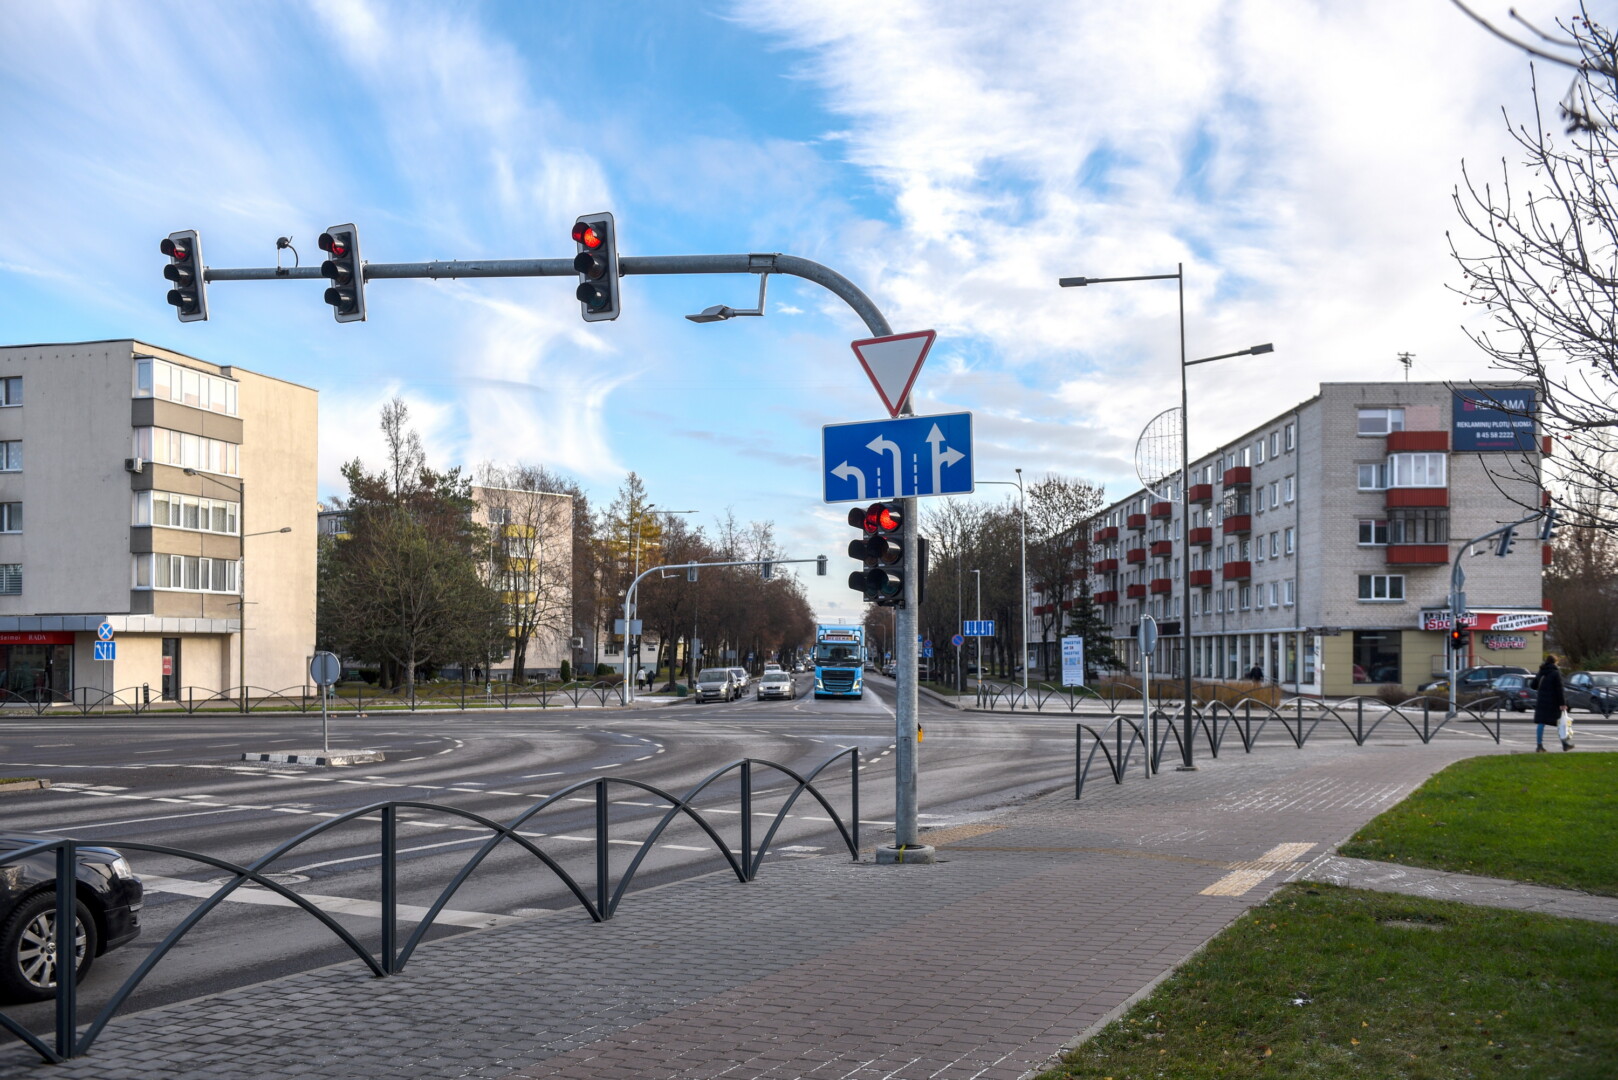 Degant raudonam šviesoforo signalui per Vilniaus ir J. Basanavičiaus gatvių sankryžą praskuodęs vos nenutrenkdamas į perėją išėjusių pėsčiųjų taksistas padarė „paslaugą“ visiems vairuotojams.